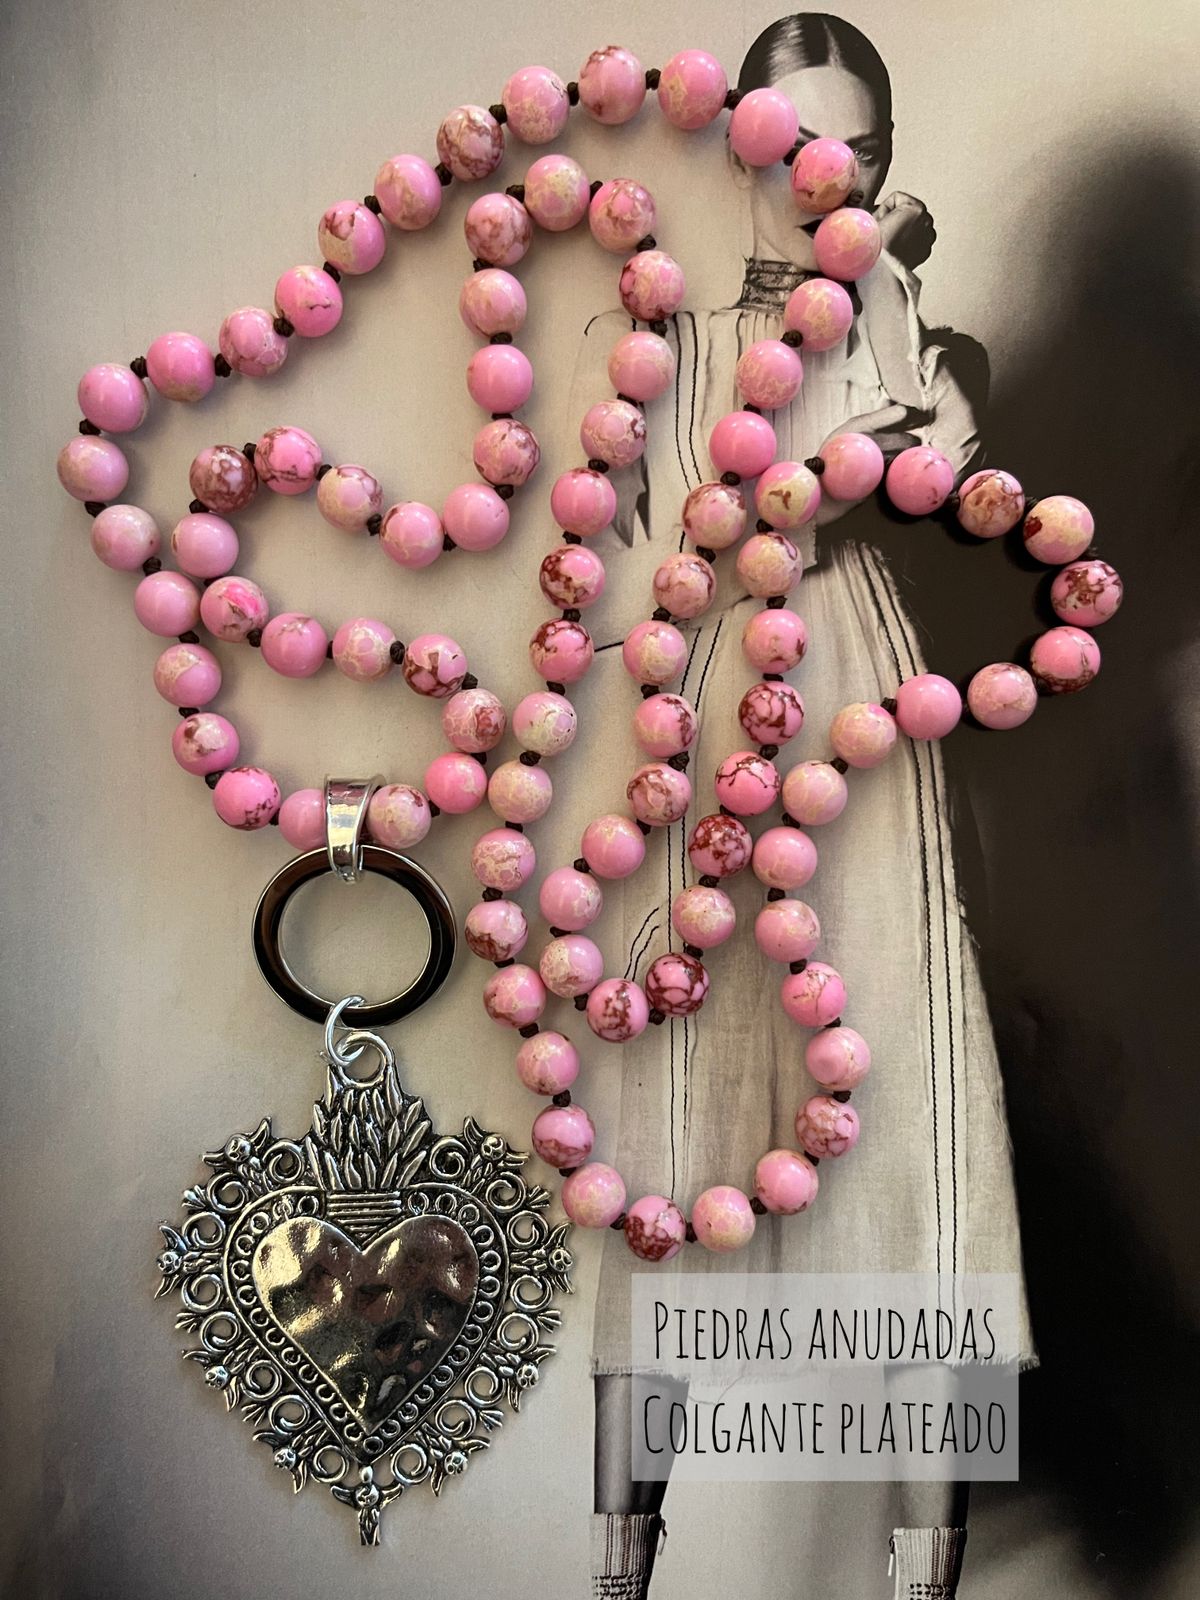 Collar Hippie Chic de piedras anudadas en tonos rosados y colgante de corazon plateado.